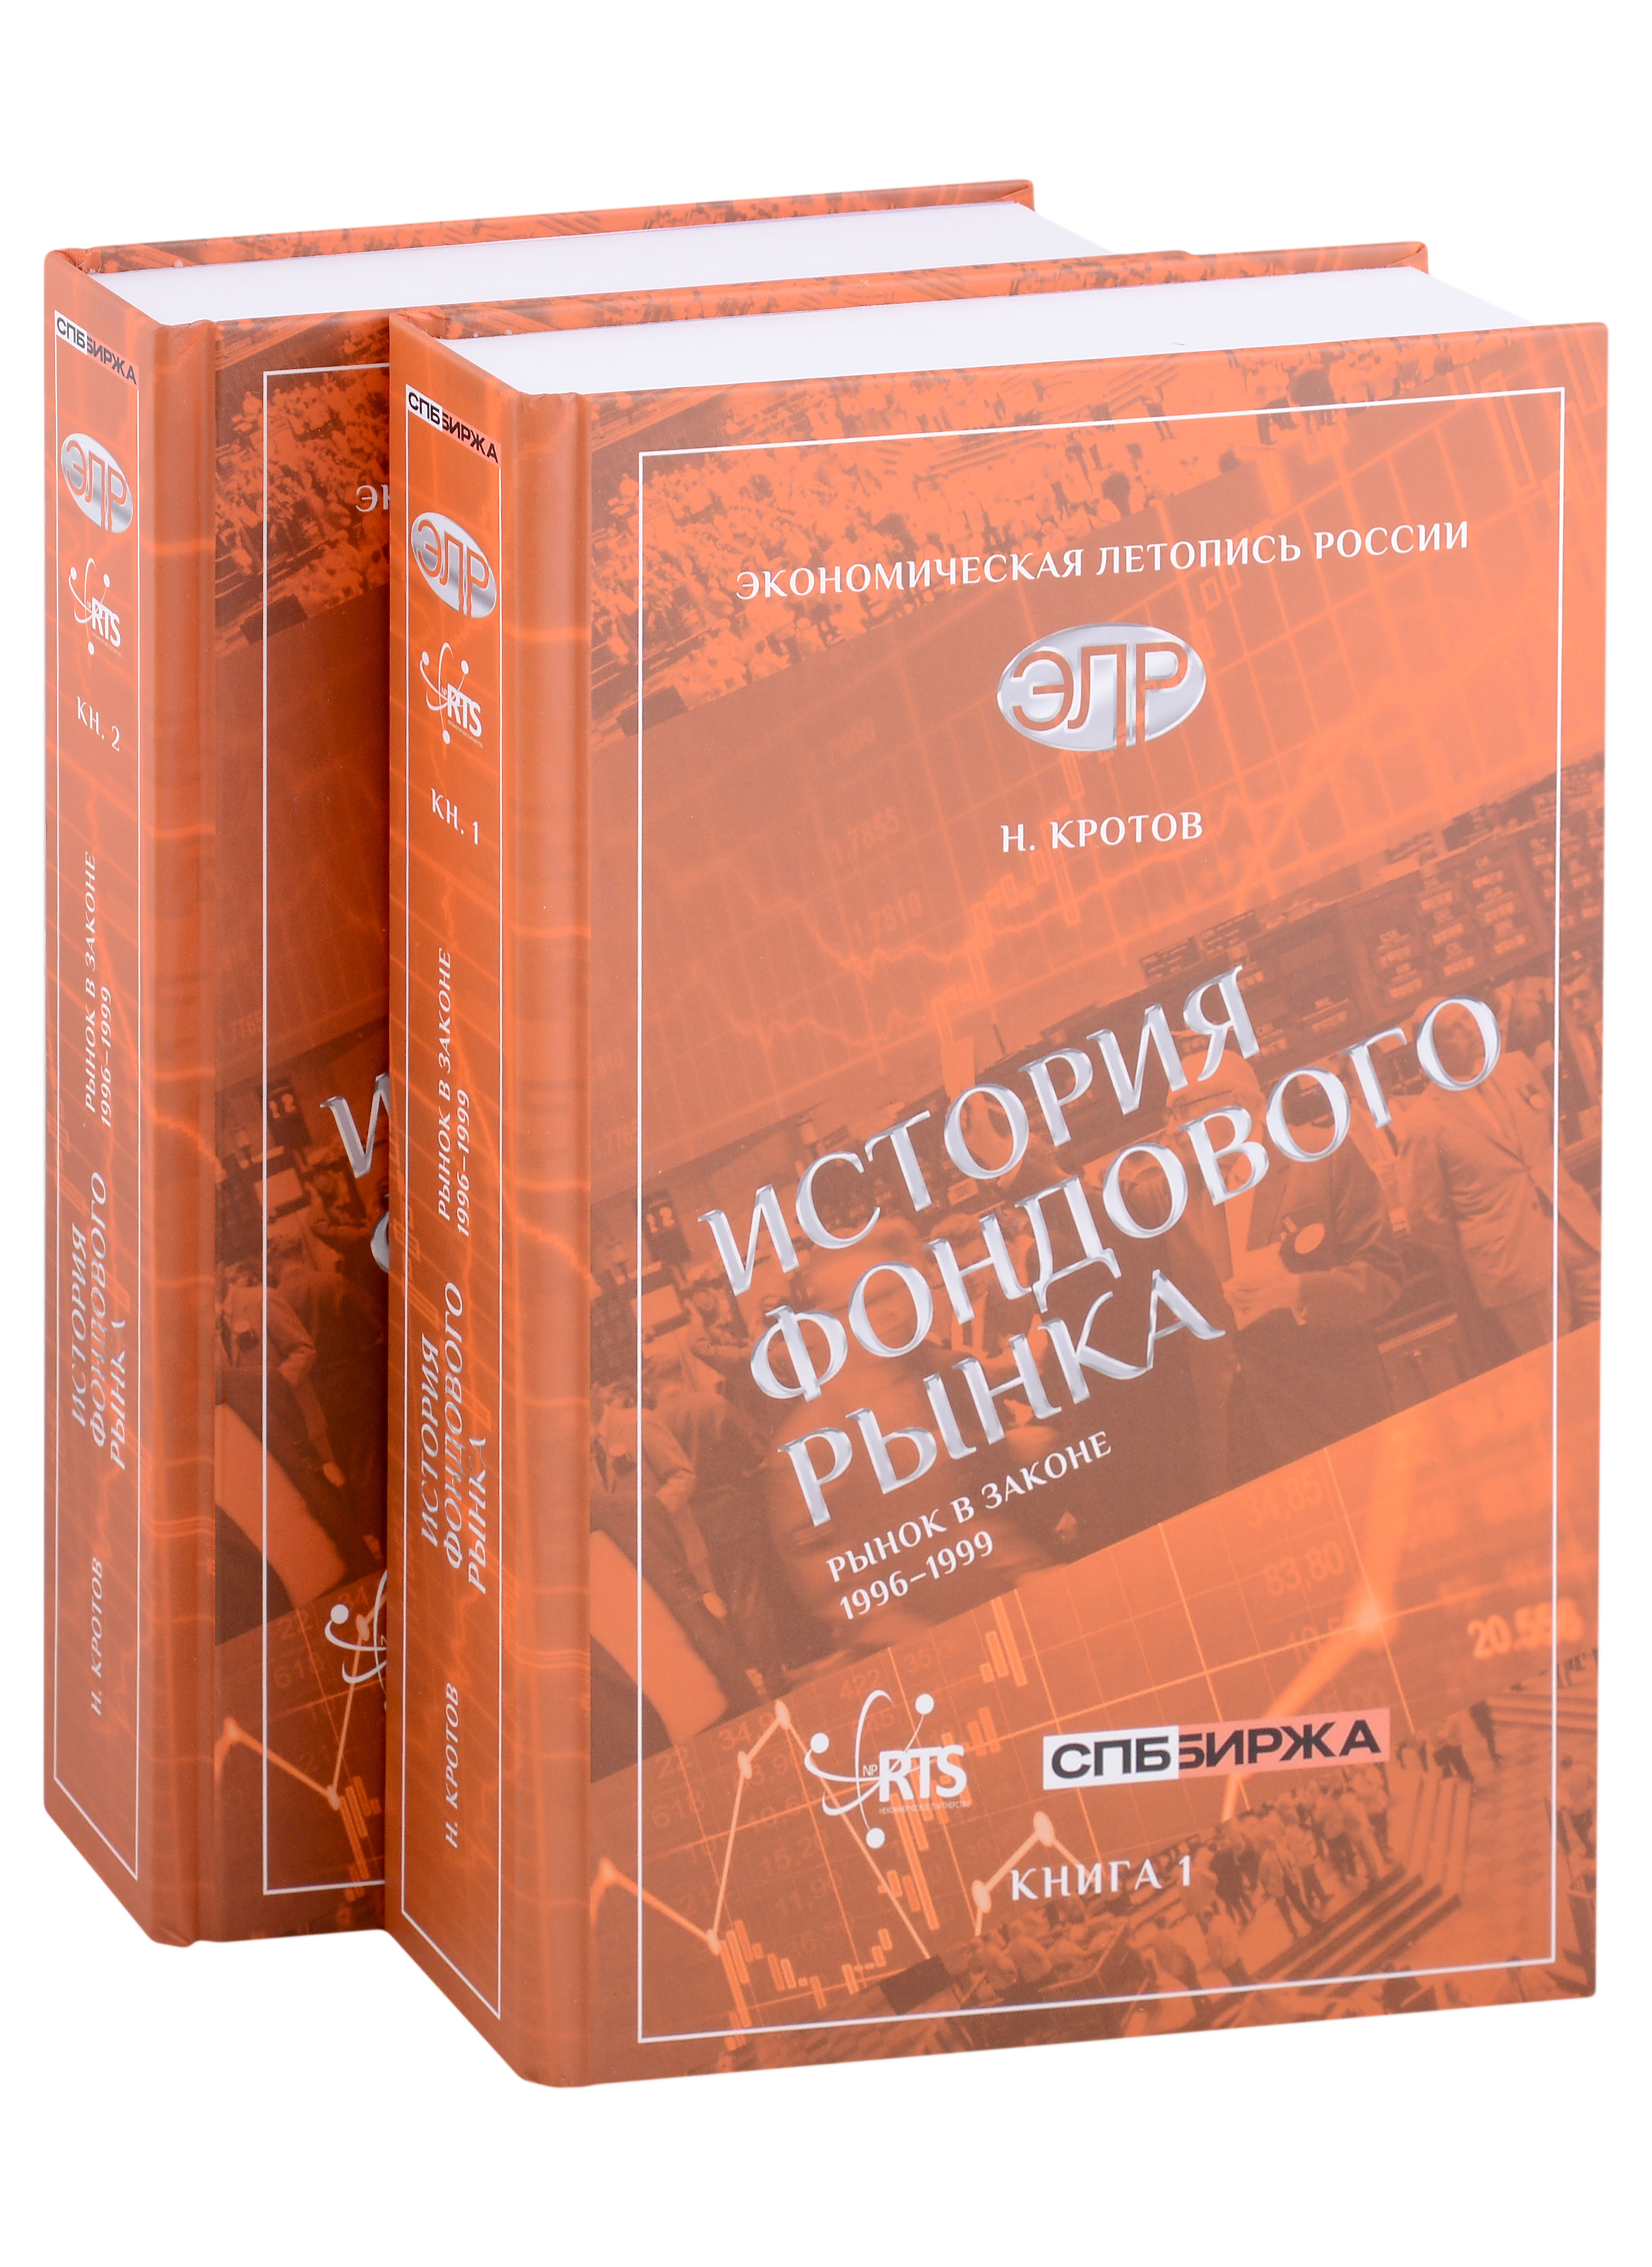 Кротов Николай Иванович - История фондового рынка. Рынок в законе (1996–1999) (Комплект из 2-х книг)